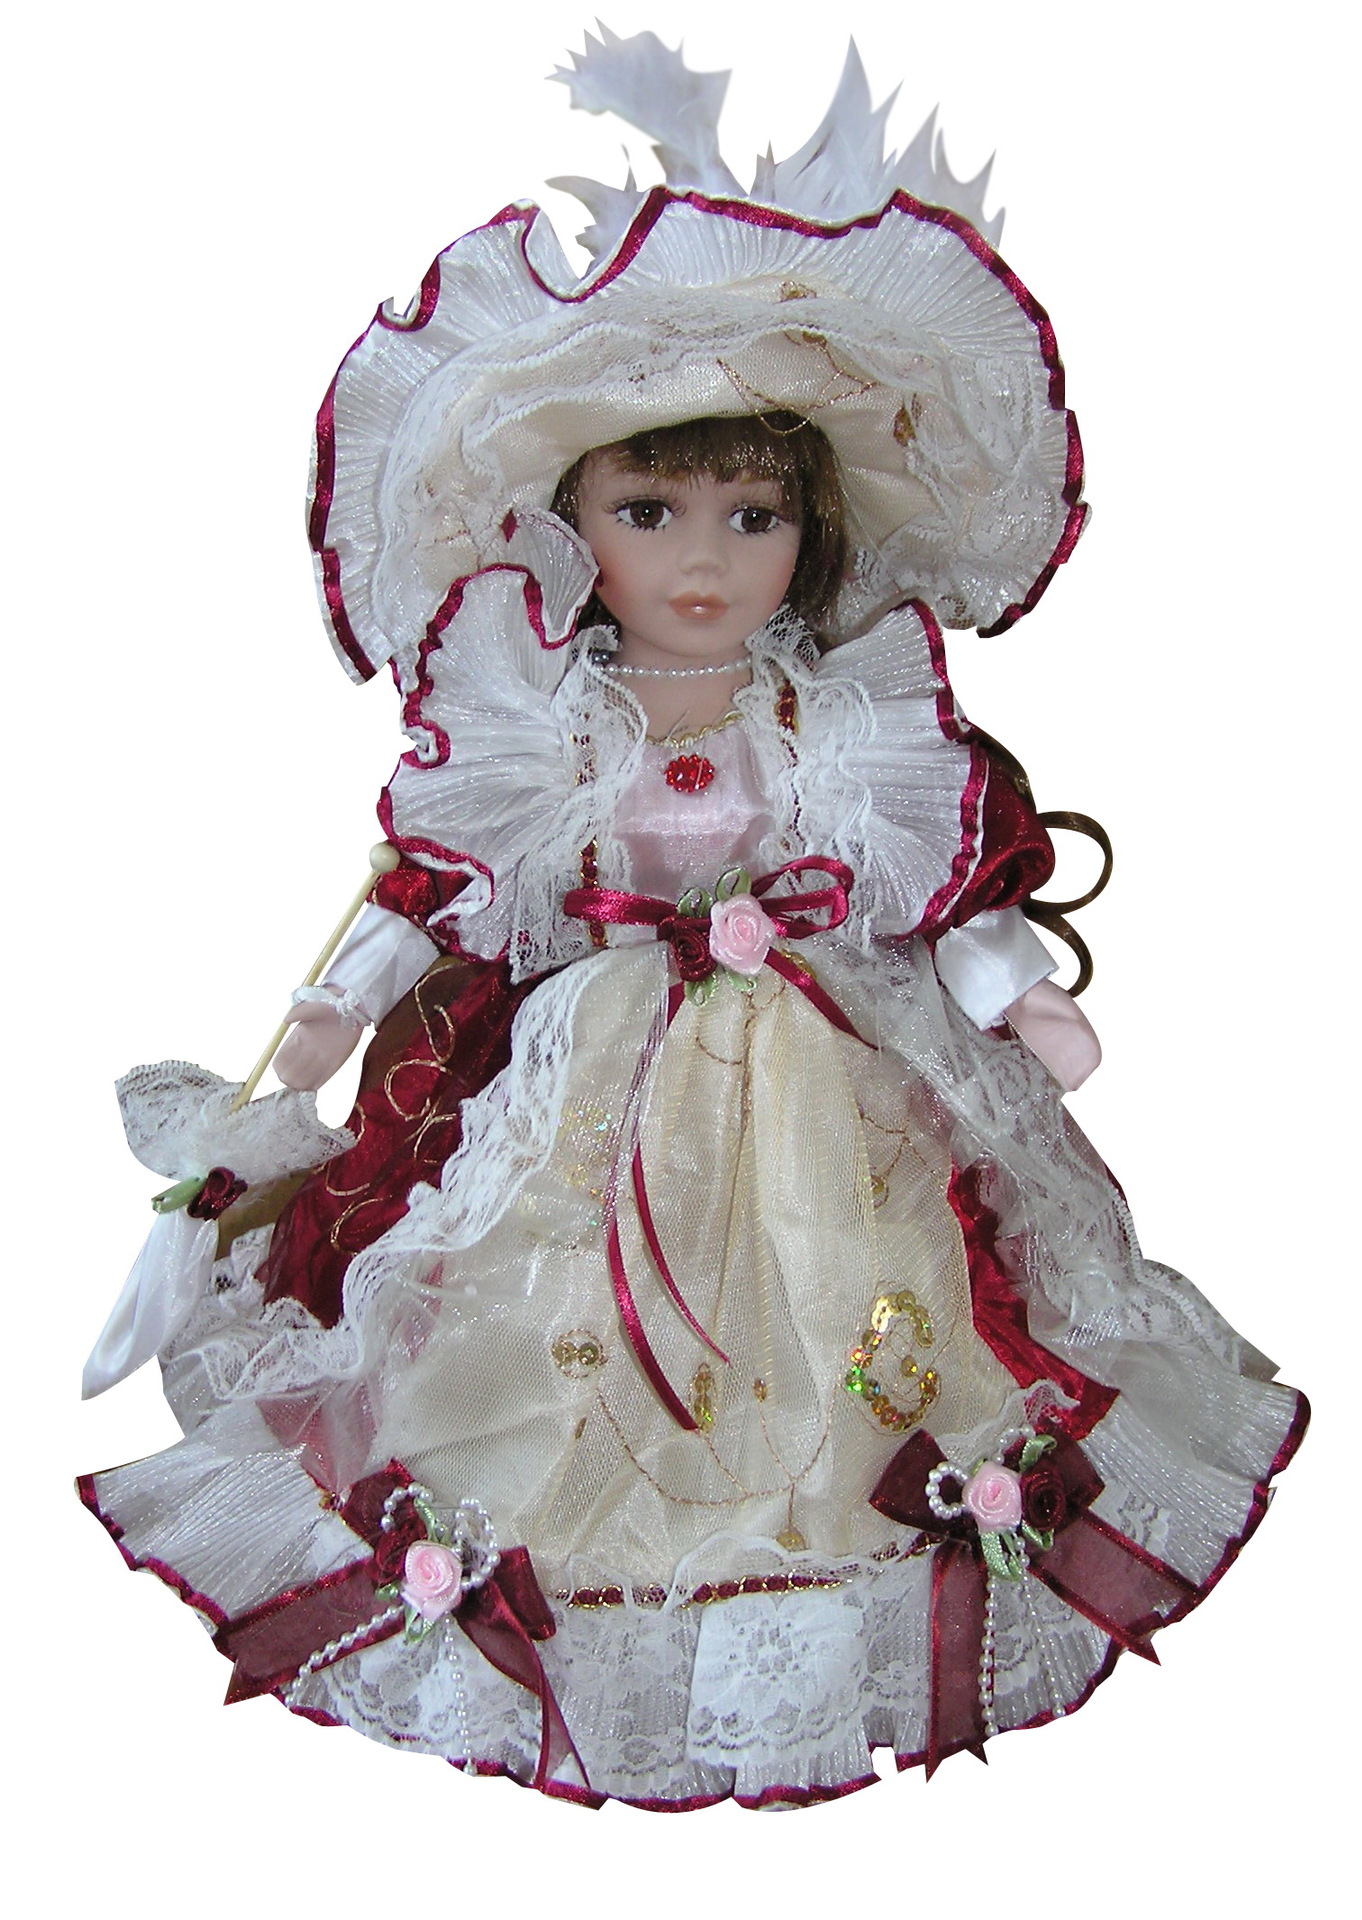 30cm 欧式维多利亚风格陶瓷娃娃厂家直销